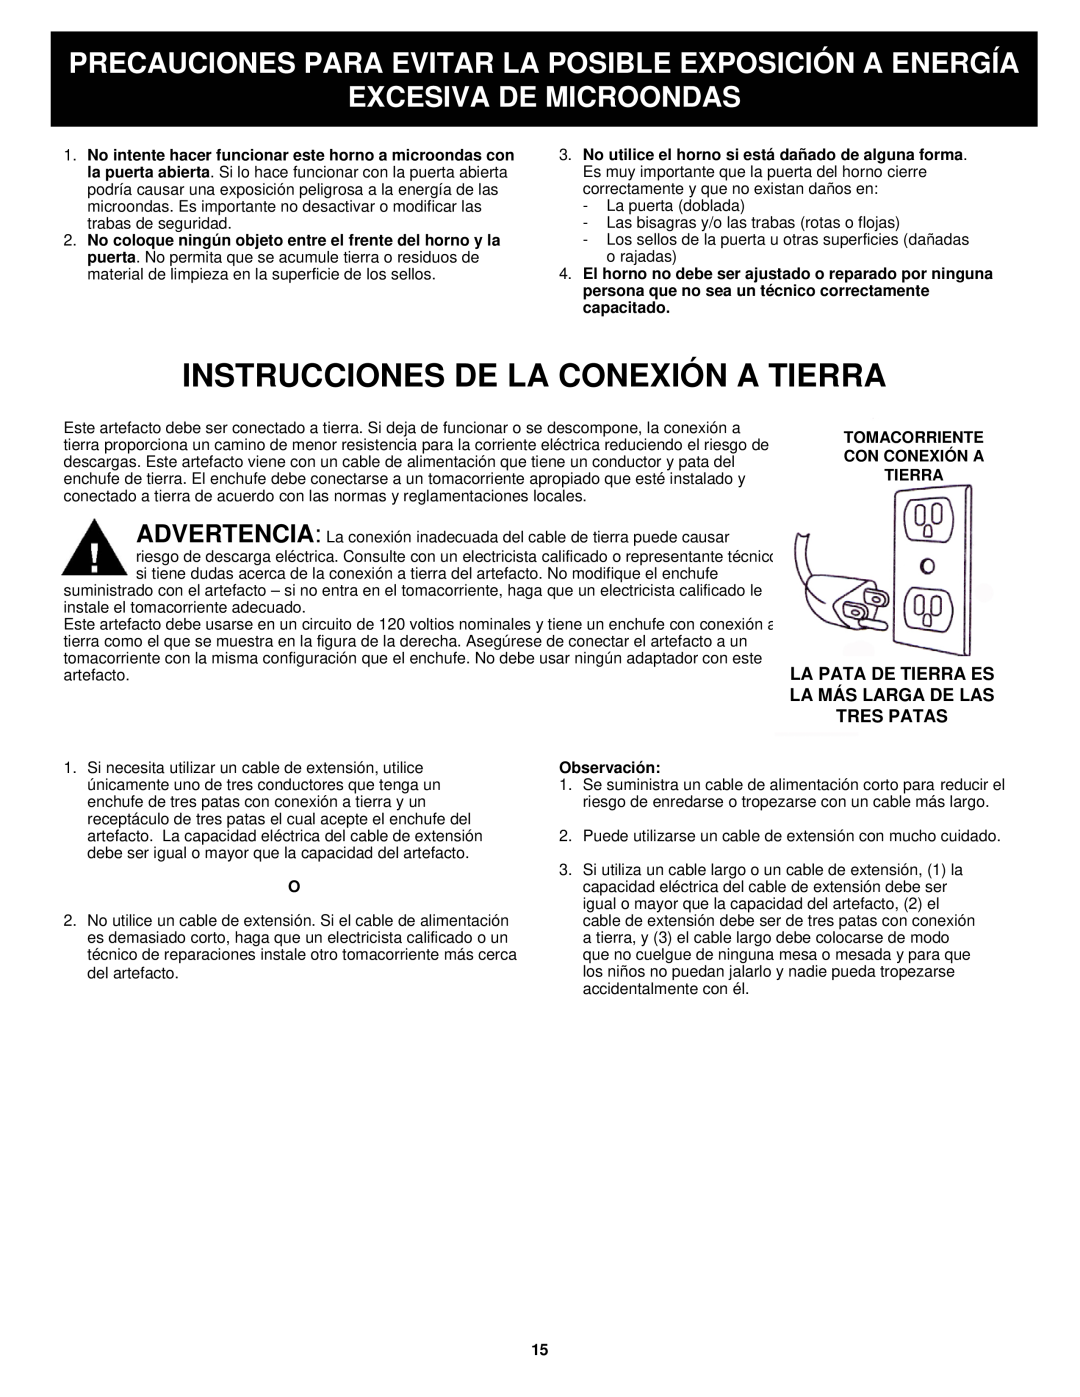 Euro-Pro K5345B owner manual Instrucciones De La Conexión A Tierra, Excesiva De Microondas 